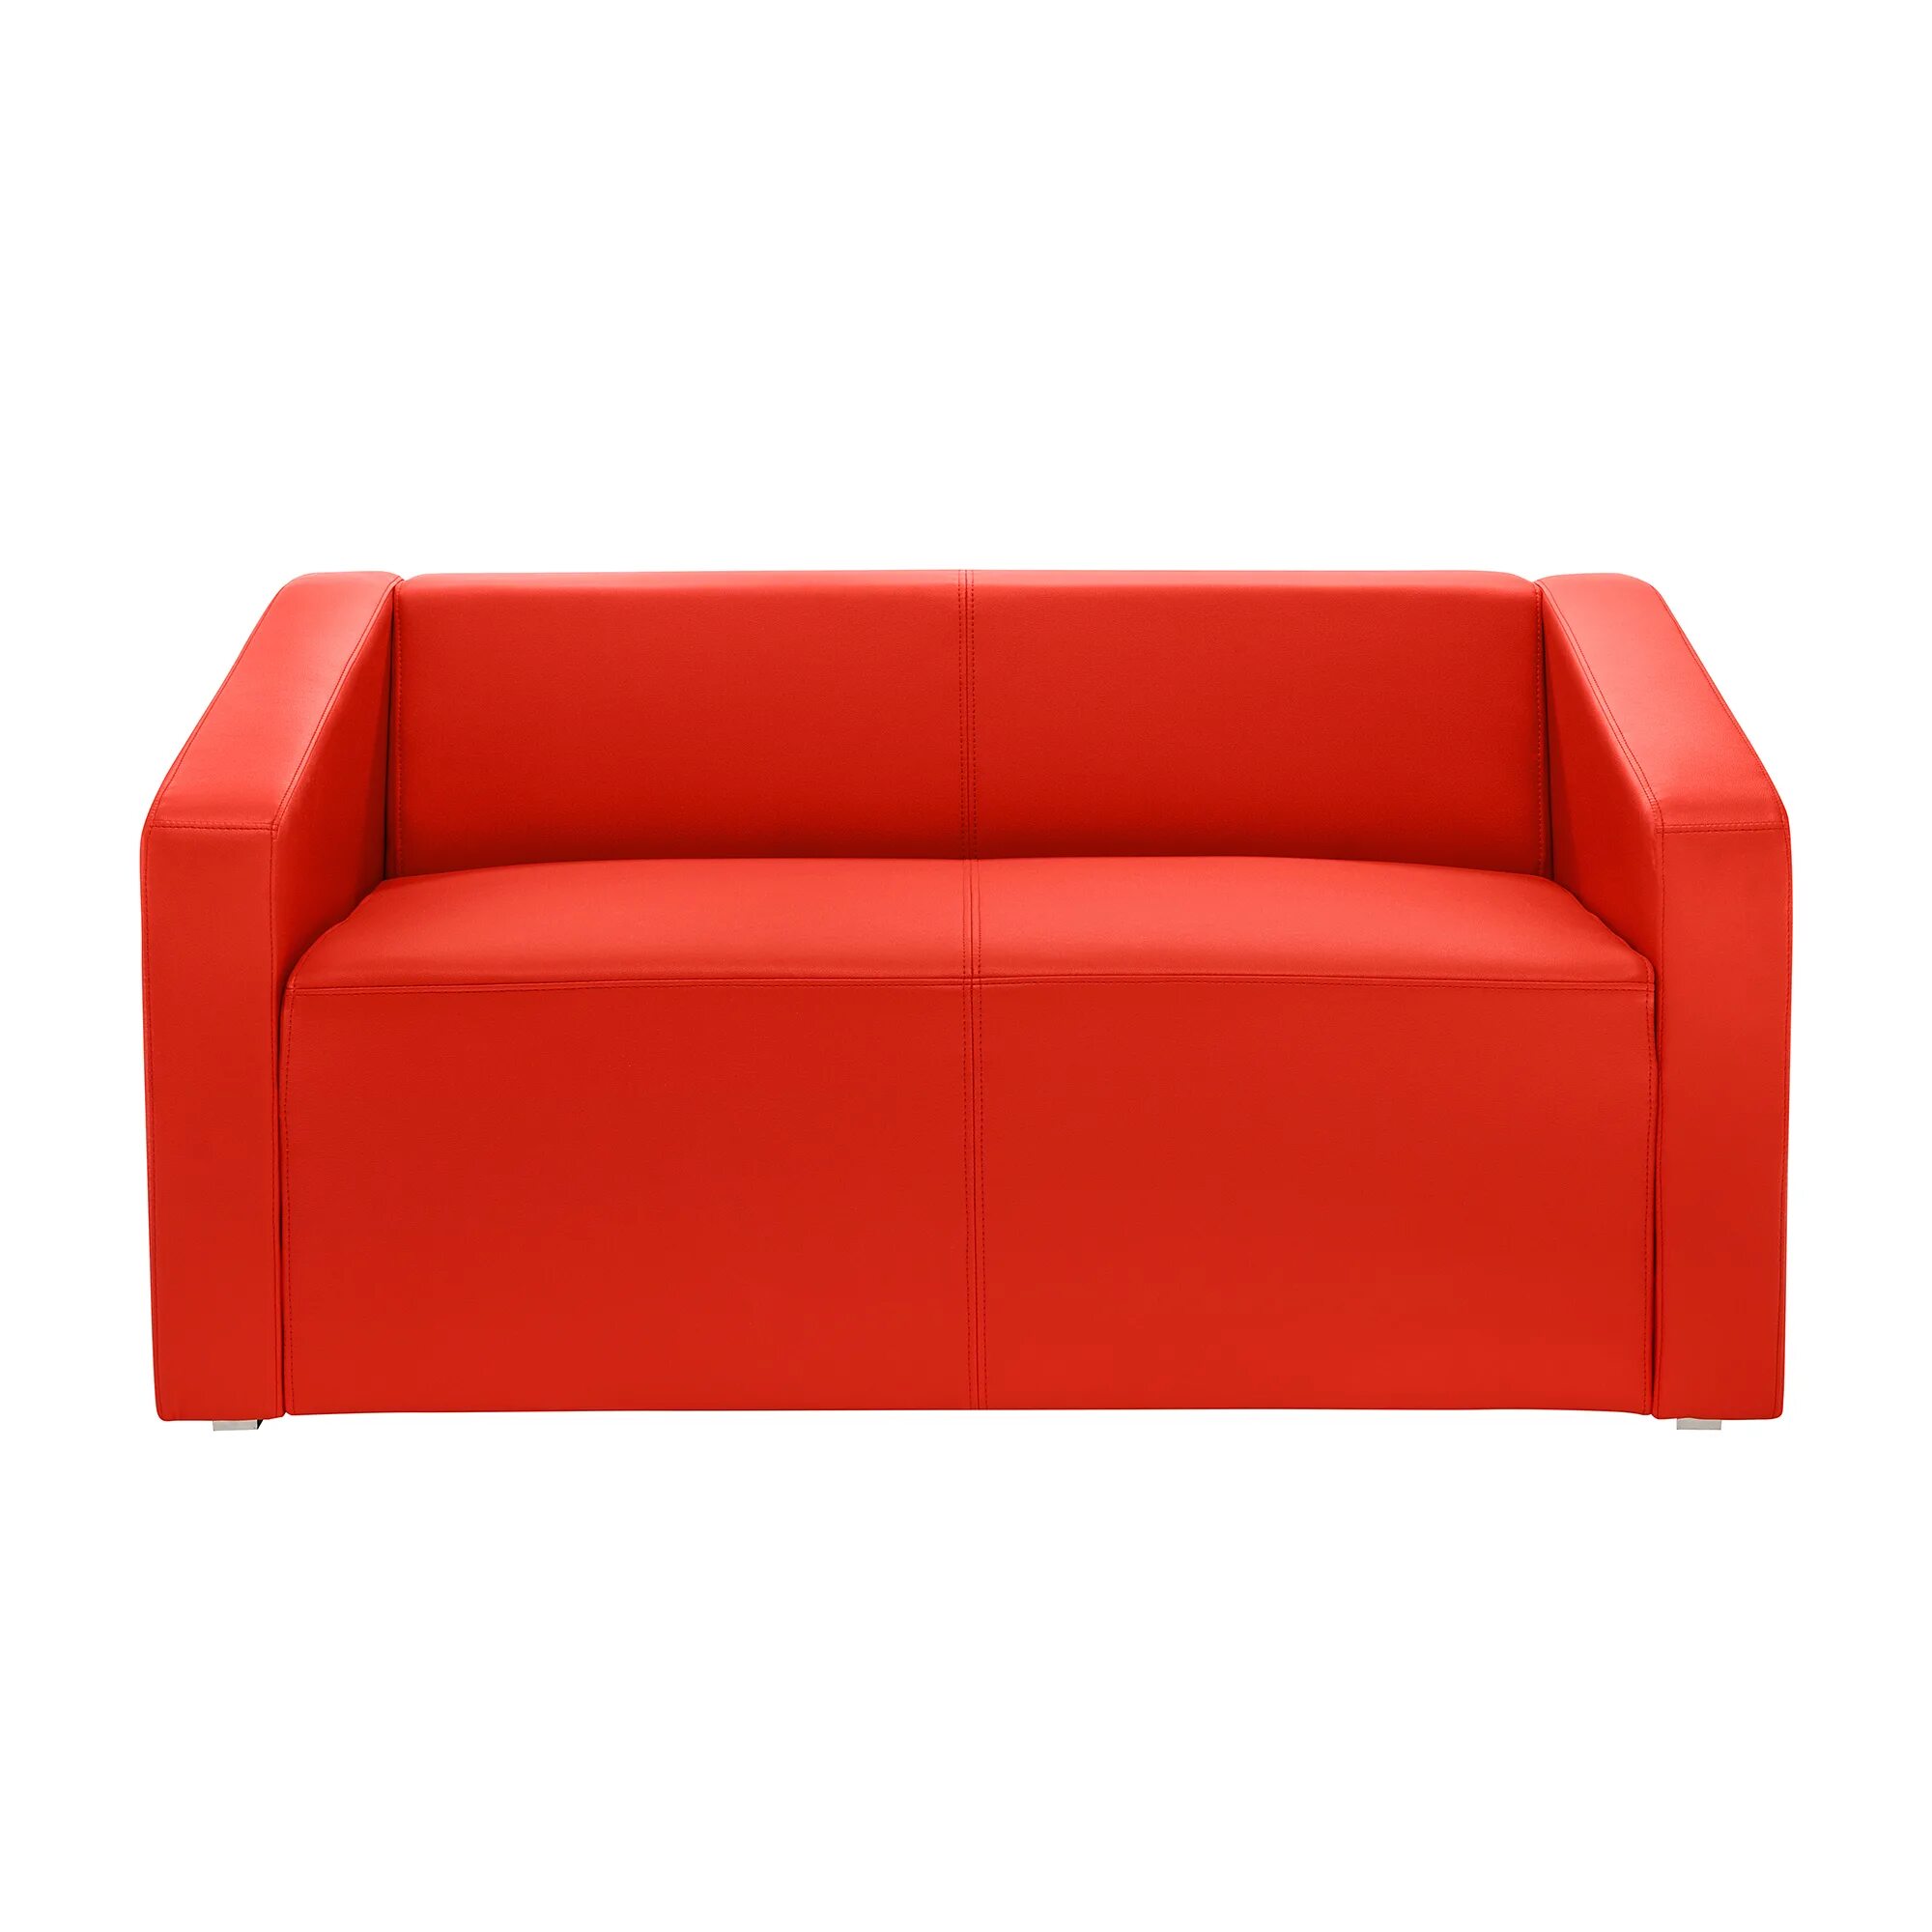 Диван икеа Solsta. Диван ikea сольста. Красный диван икеа. Красный металлический диван икеа.